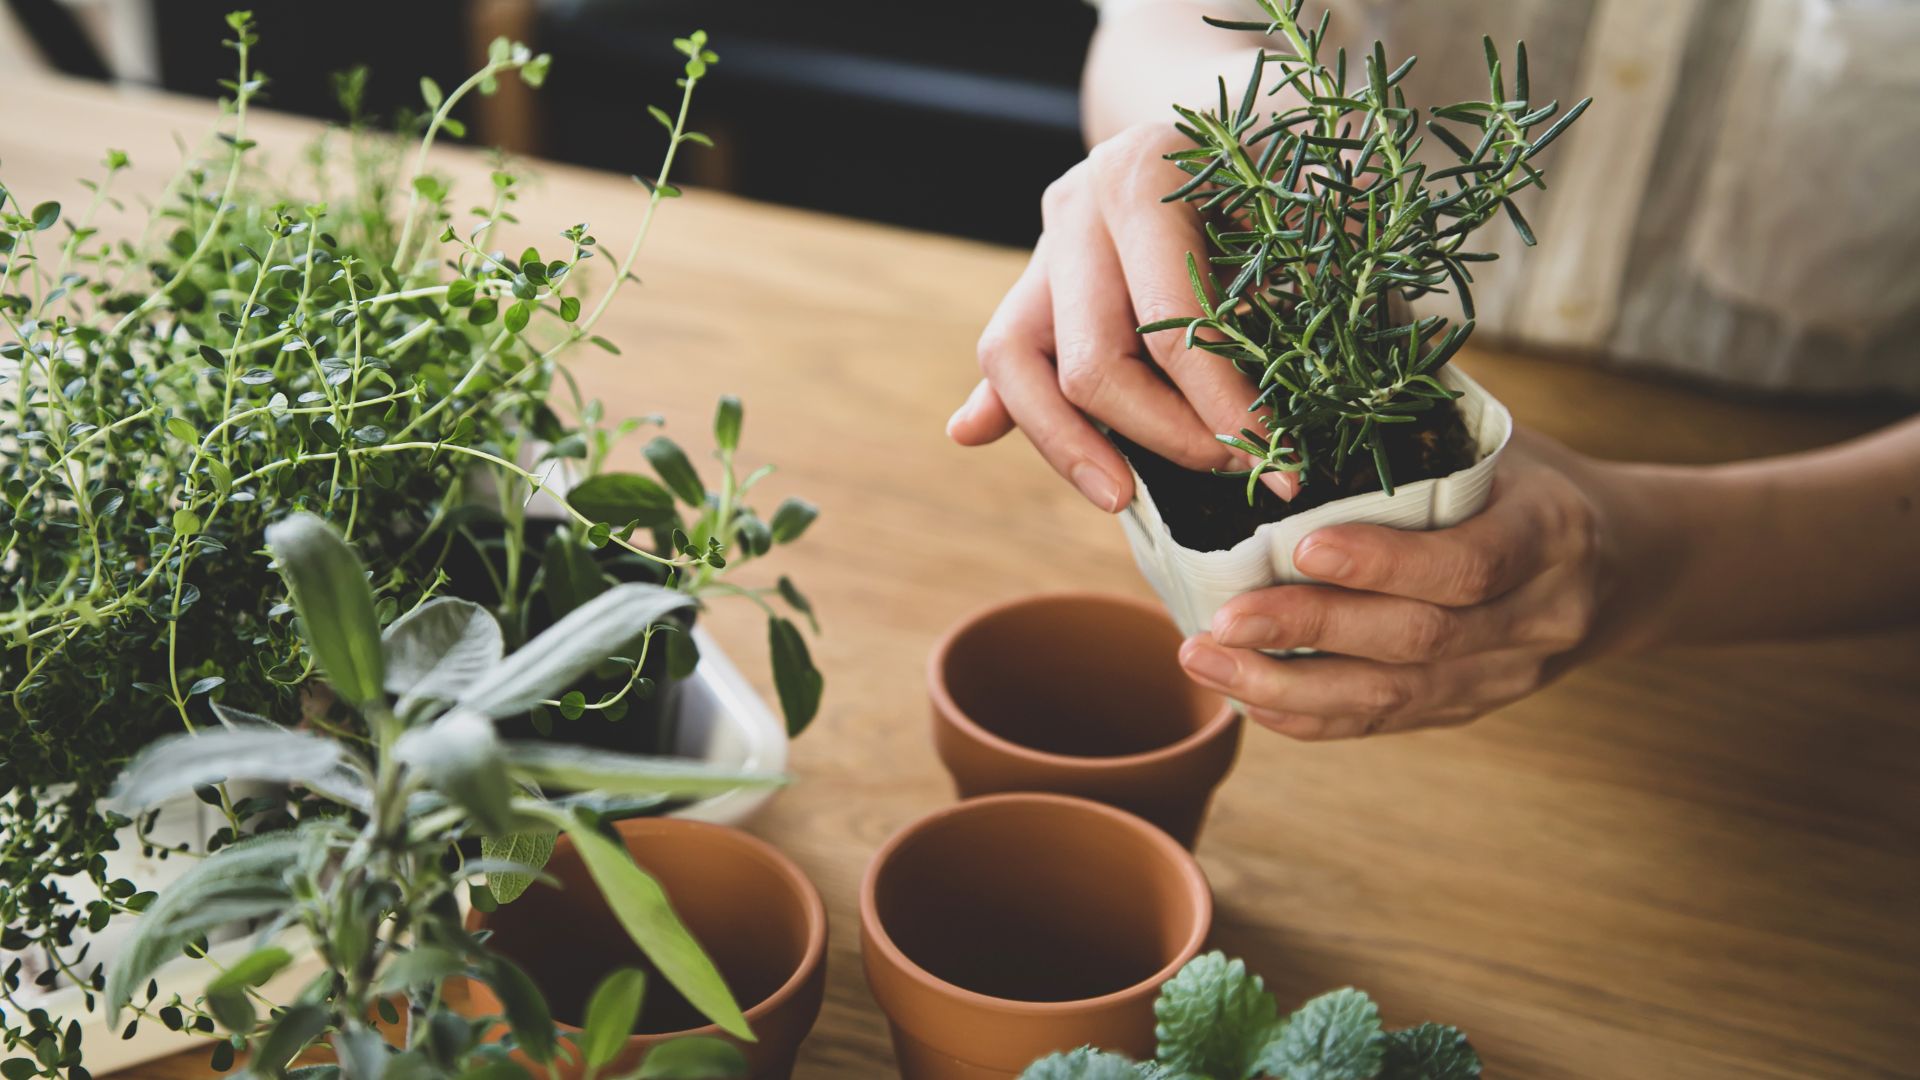 15 Herbs to Start Your Indoor Herb Garden